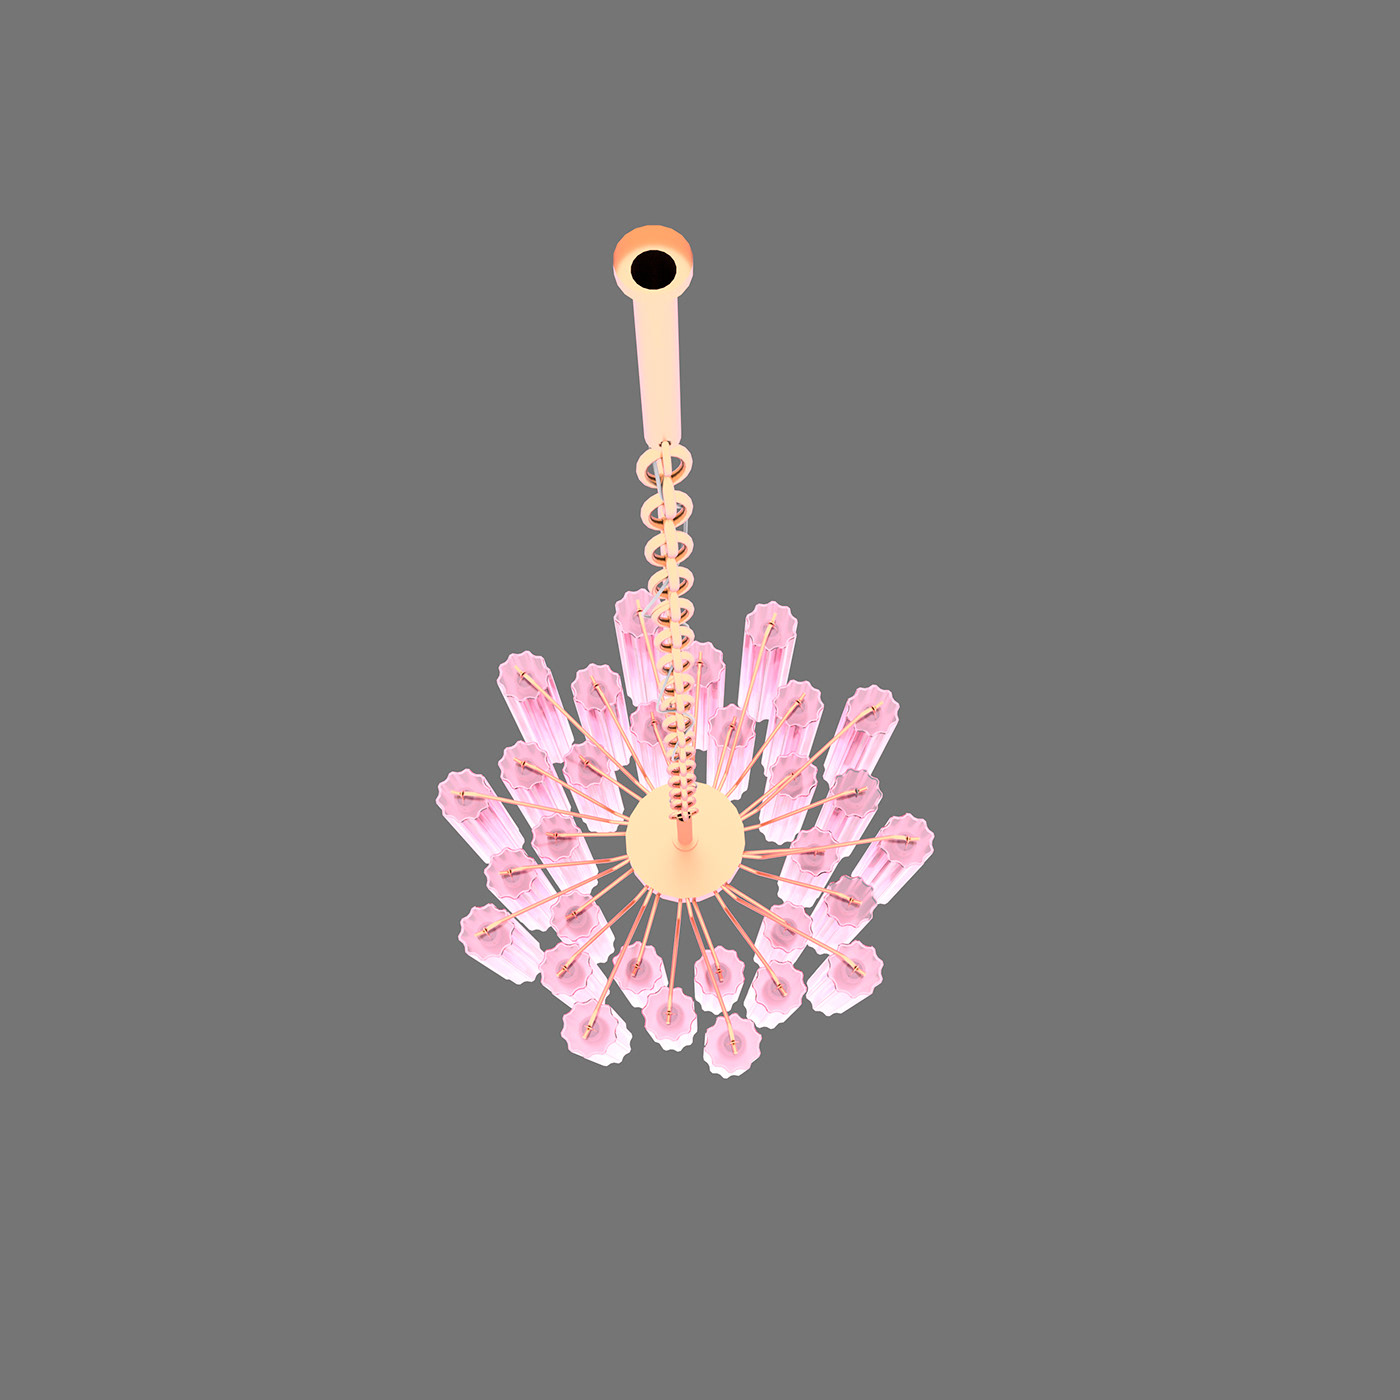 3D 3D model Ceiling lamp chandelier fancy Lamp modern visualization